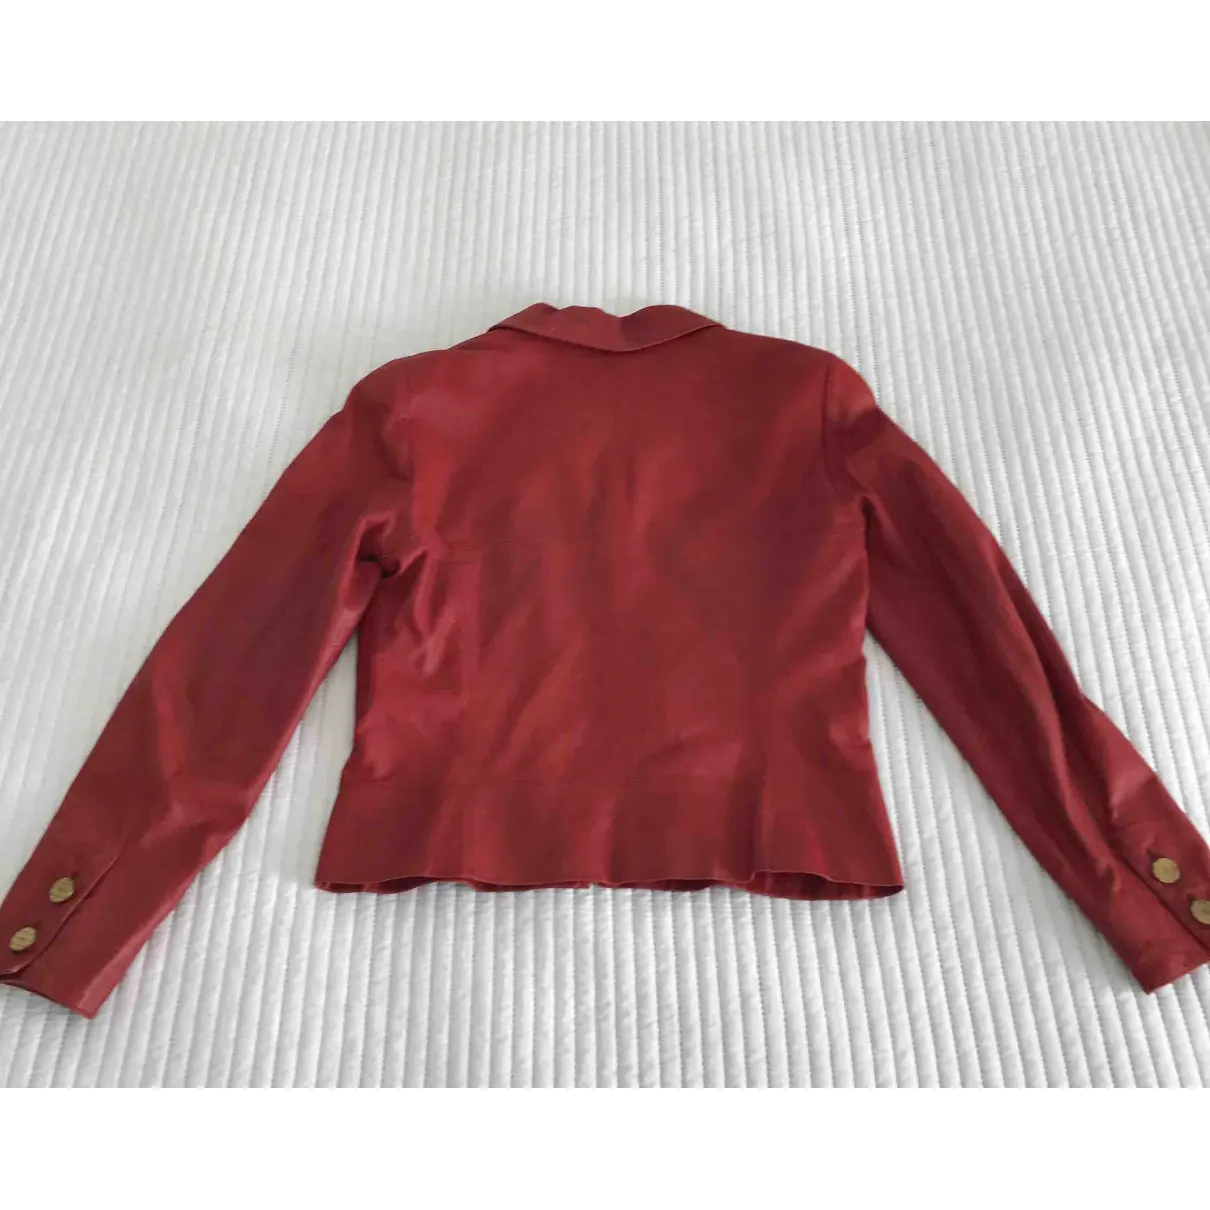 Buy Chanel Leather jacket online - Vintage